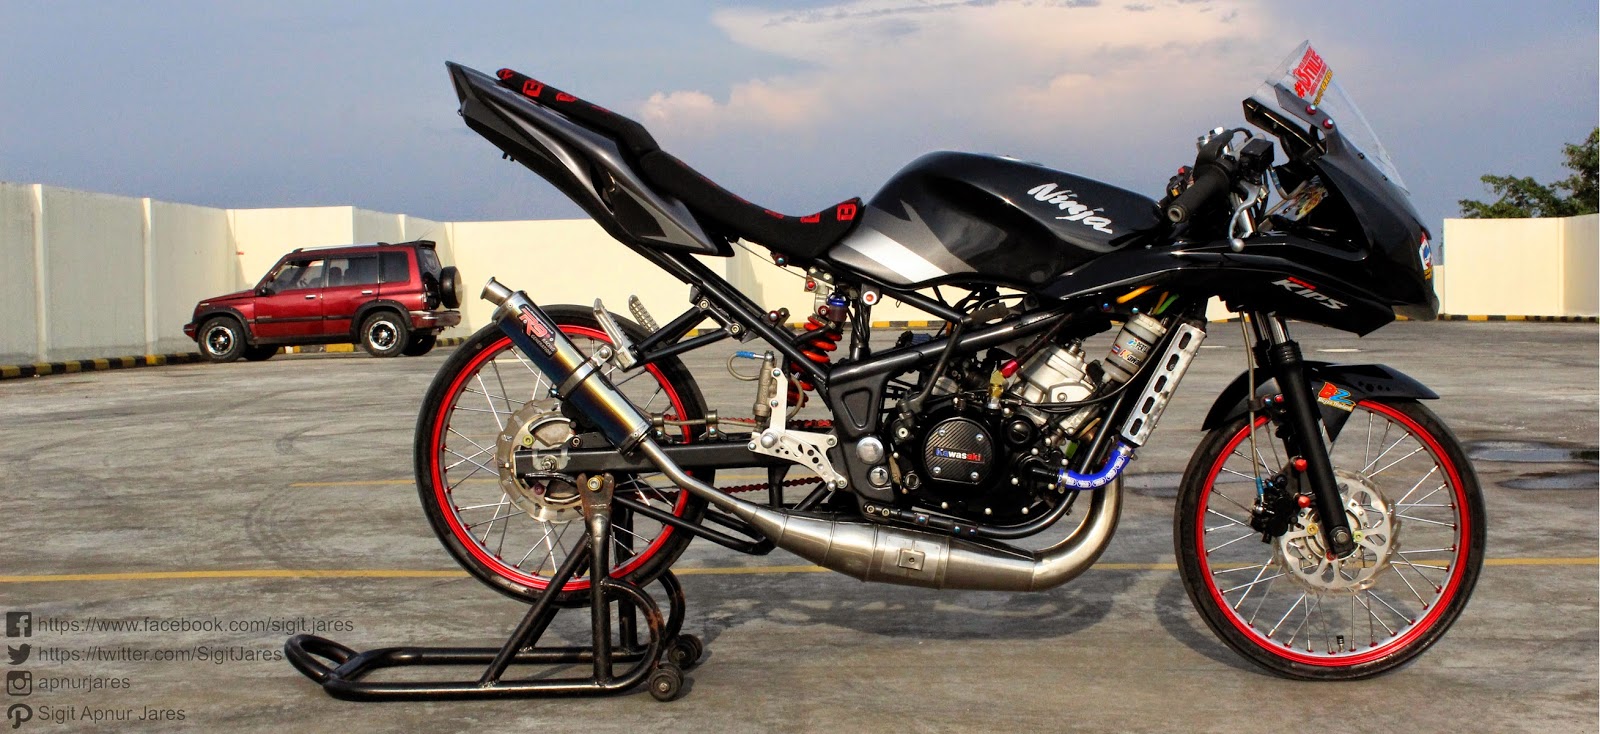 MODIFIKASI MOTOR Modifikasi Motor Tahun 2015 Ninja Dan Satria Fu